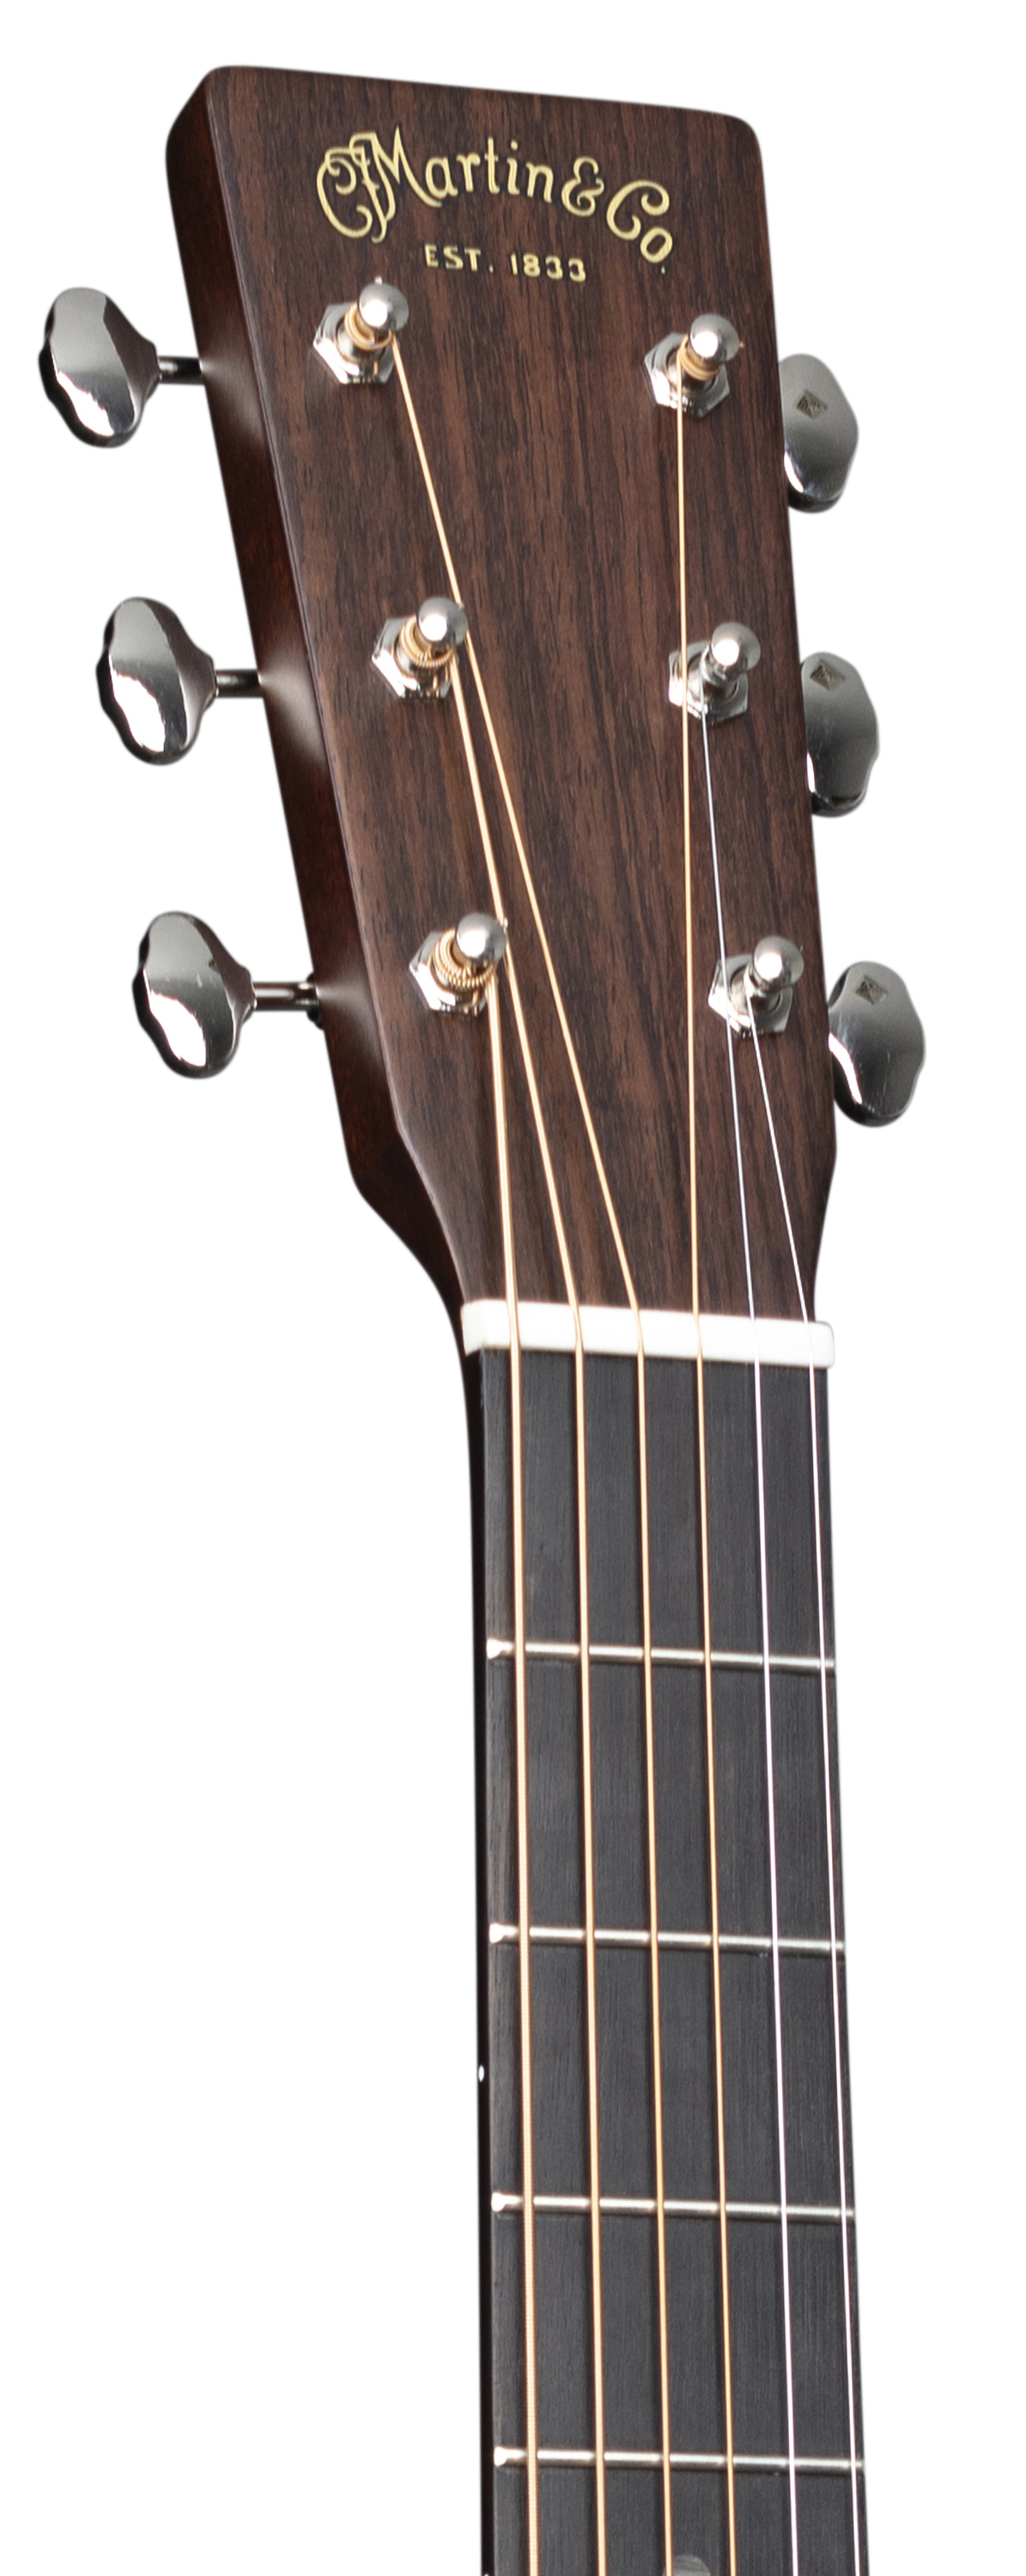 000-18 | Martin Guitar